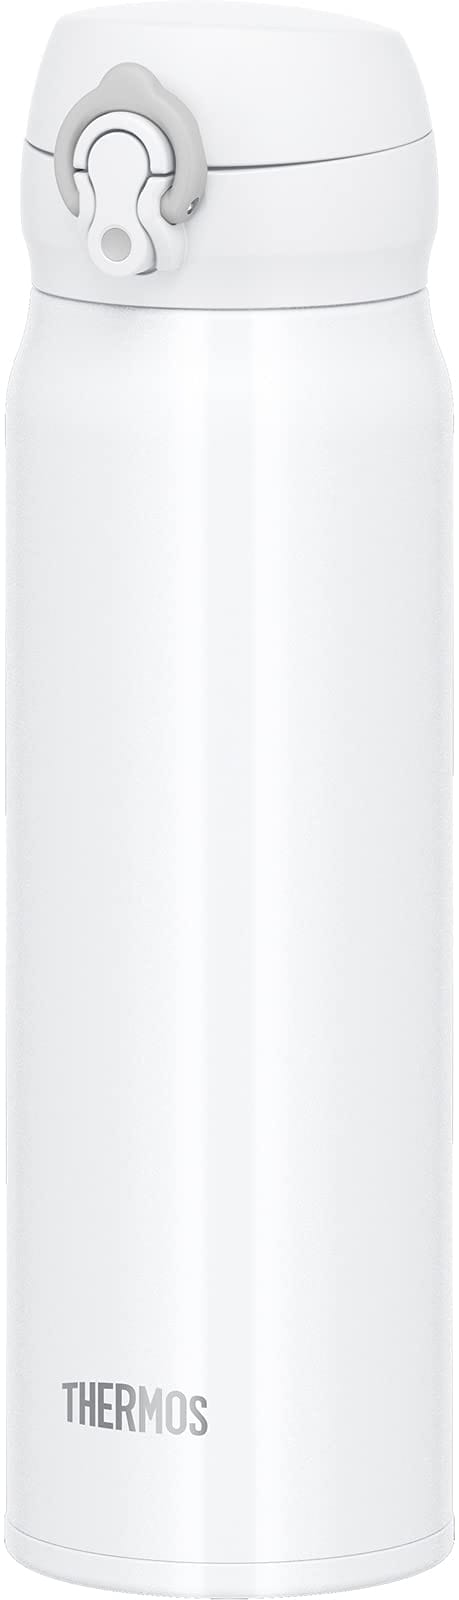 サーモス 水筒 真空断熱ケータイマグ 600ml ホワイトグレー JNL-605 WHGY